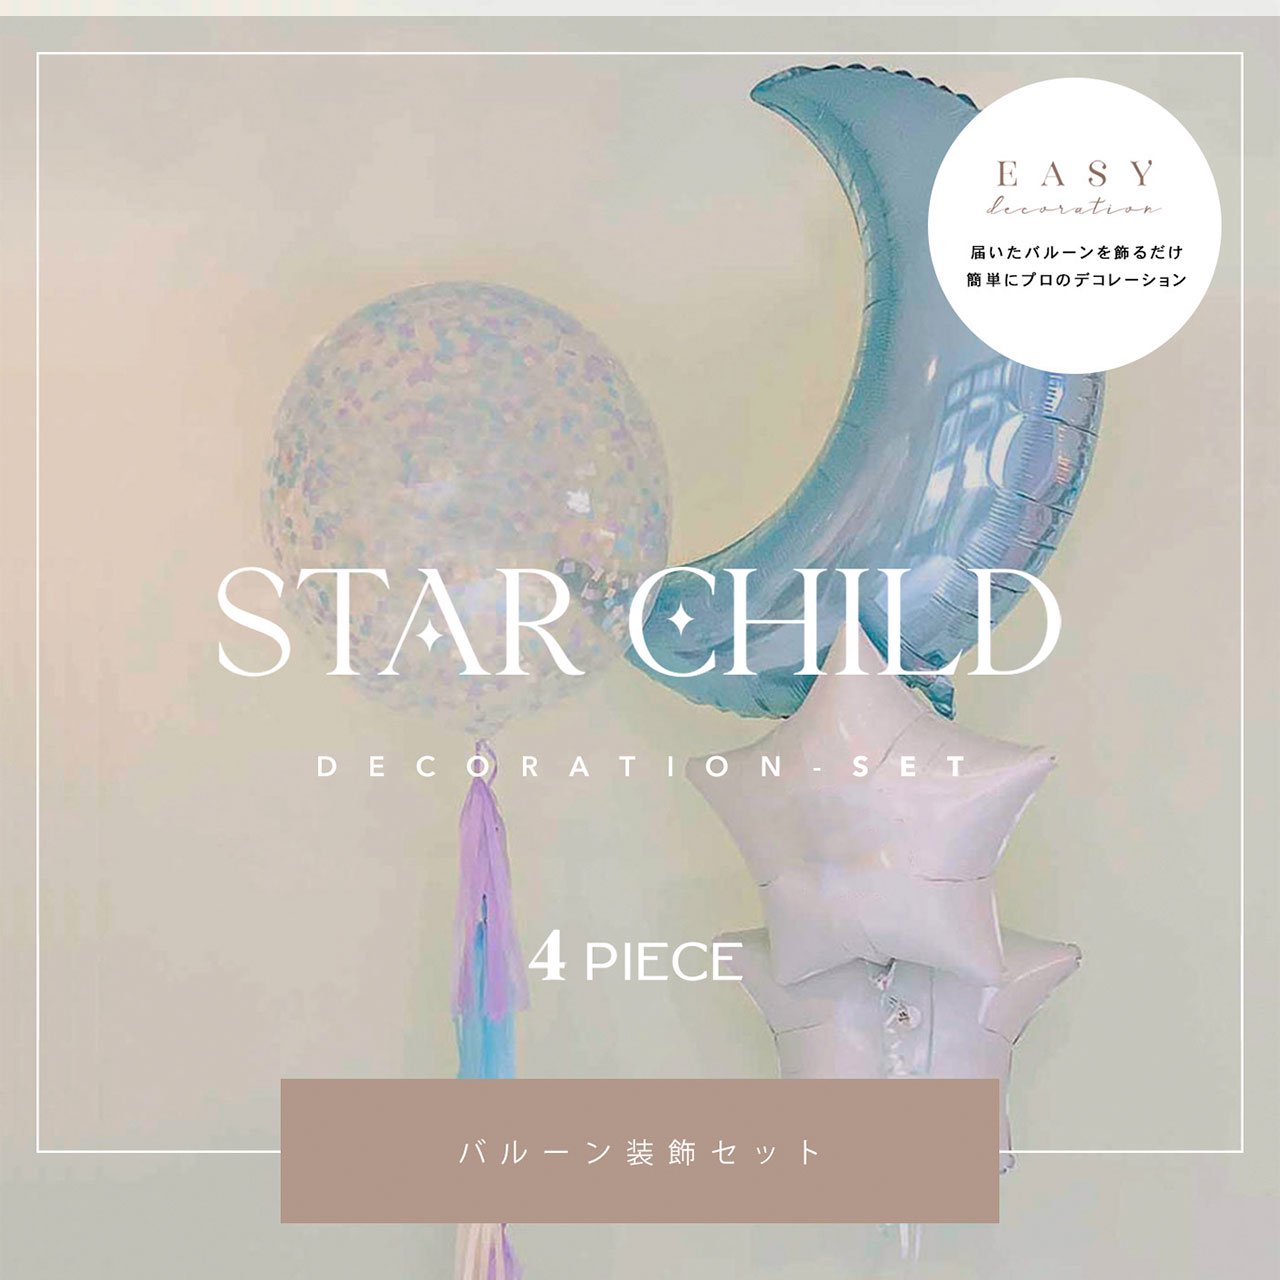 Star Child Decoration ピンク or ブルー 4set - Easy Decoration - 届いて飾るだけのイージーデコレーション